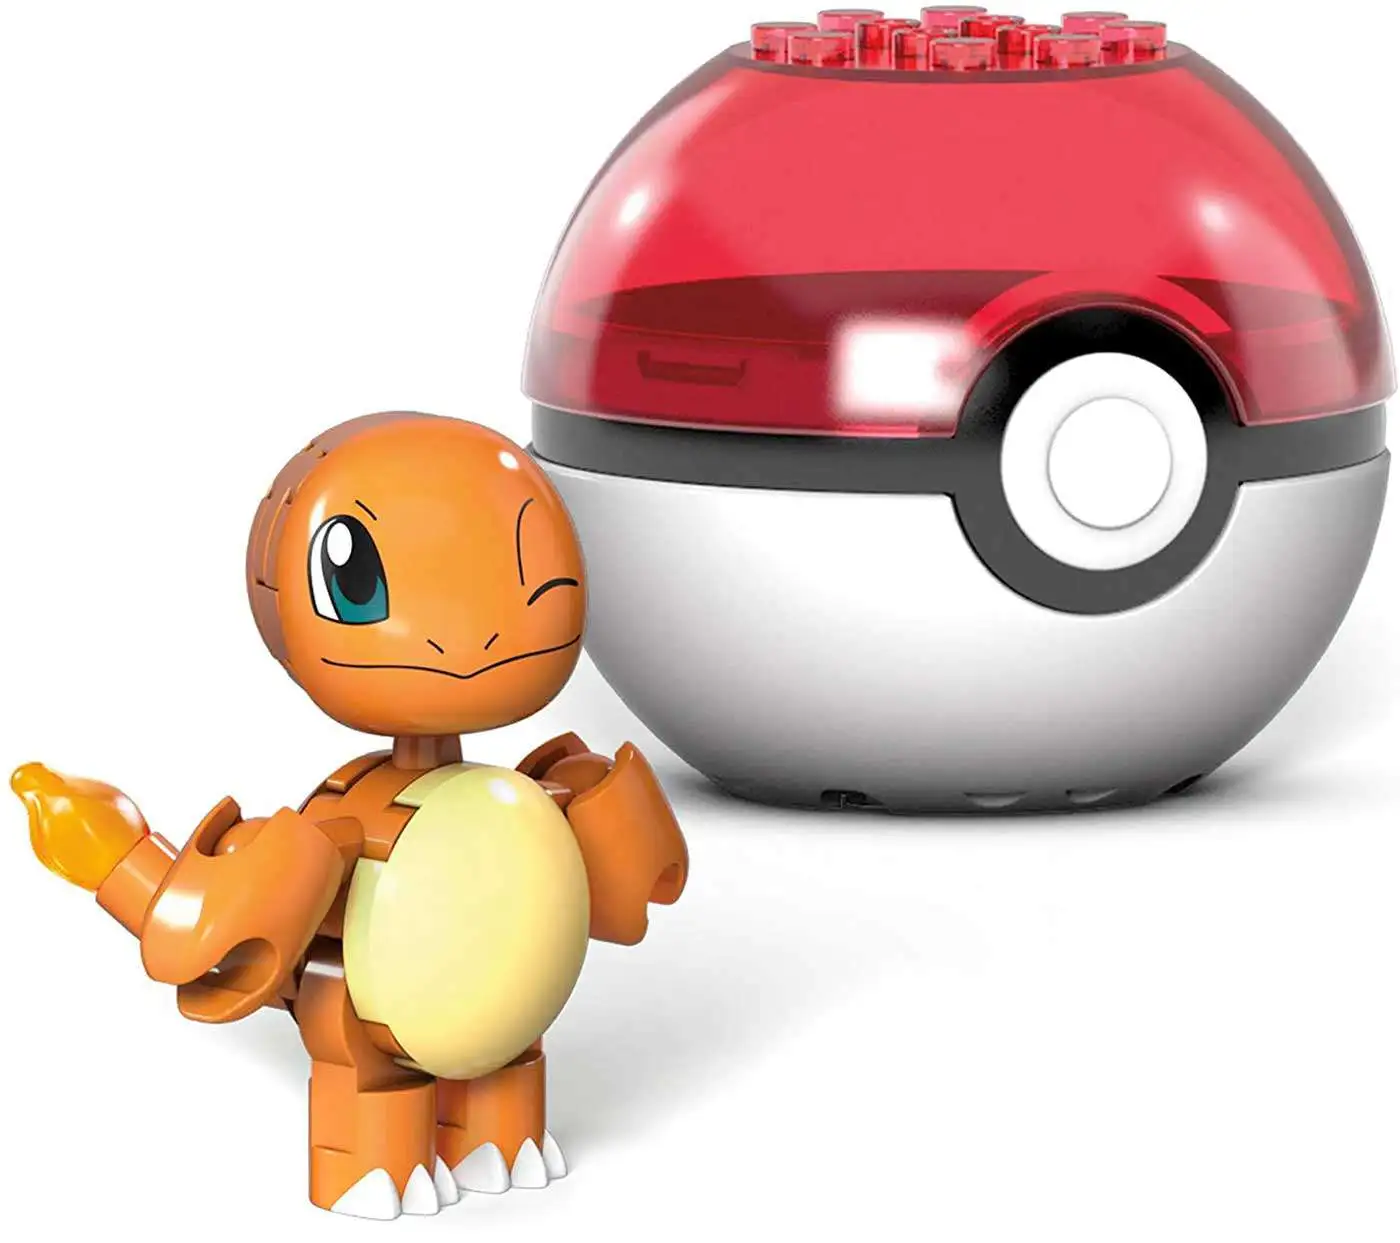 Mega Construx Pokémon Evergreen Poke Ball Assortment by Mattel